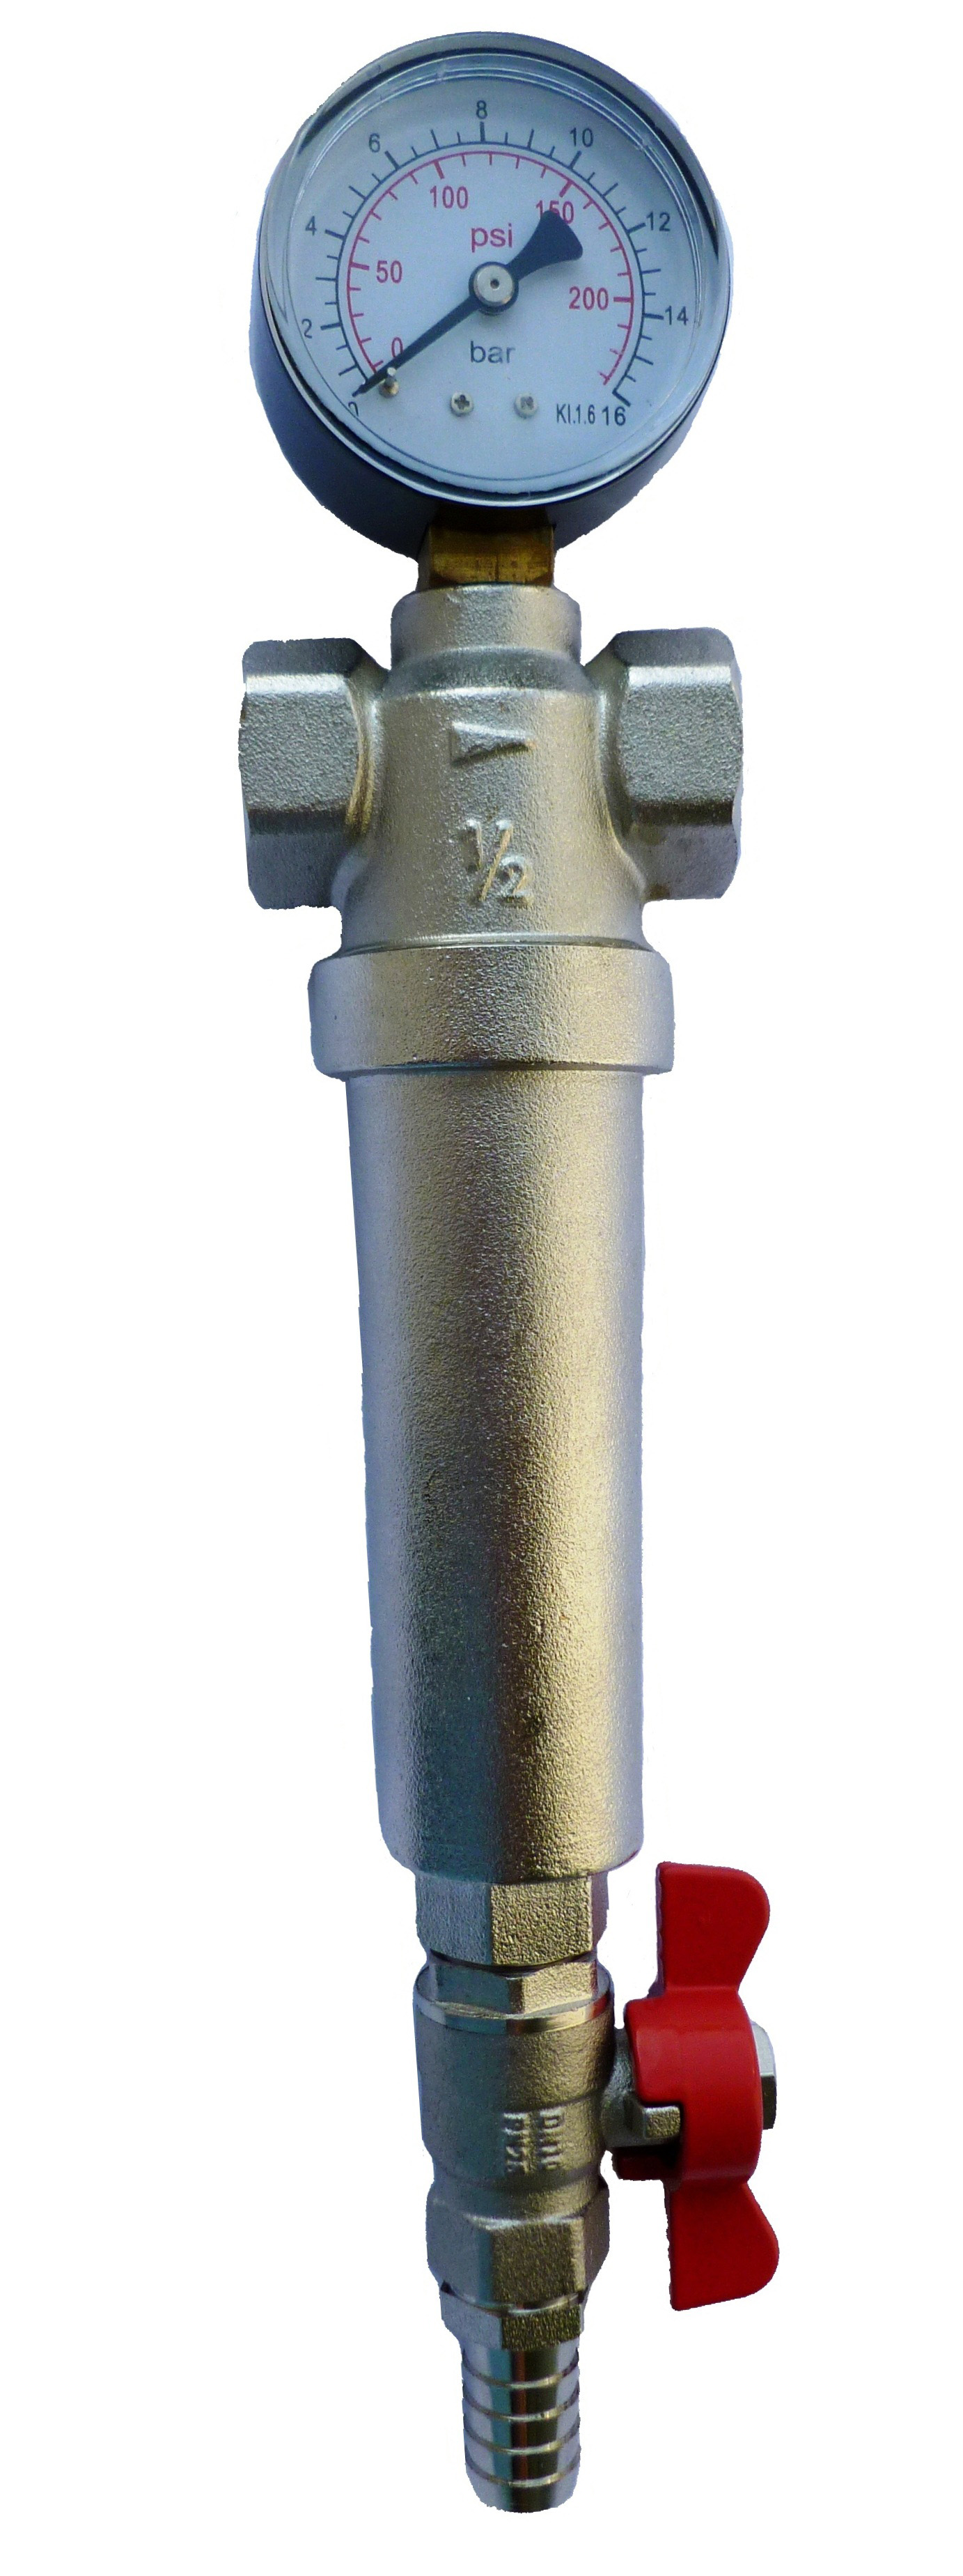 Фильтр механический самопромывной EUROS, с манометром, 3/4" EU.ST6026045 34 (Арт.:EU.ST6026045 34)